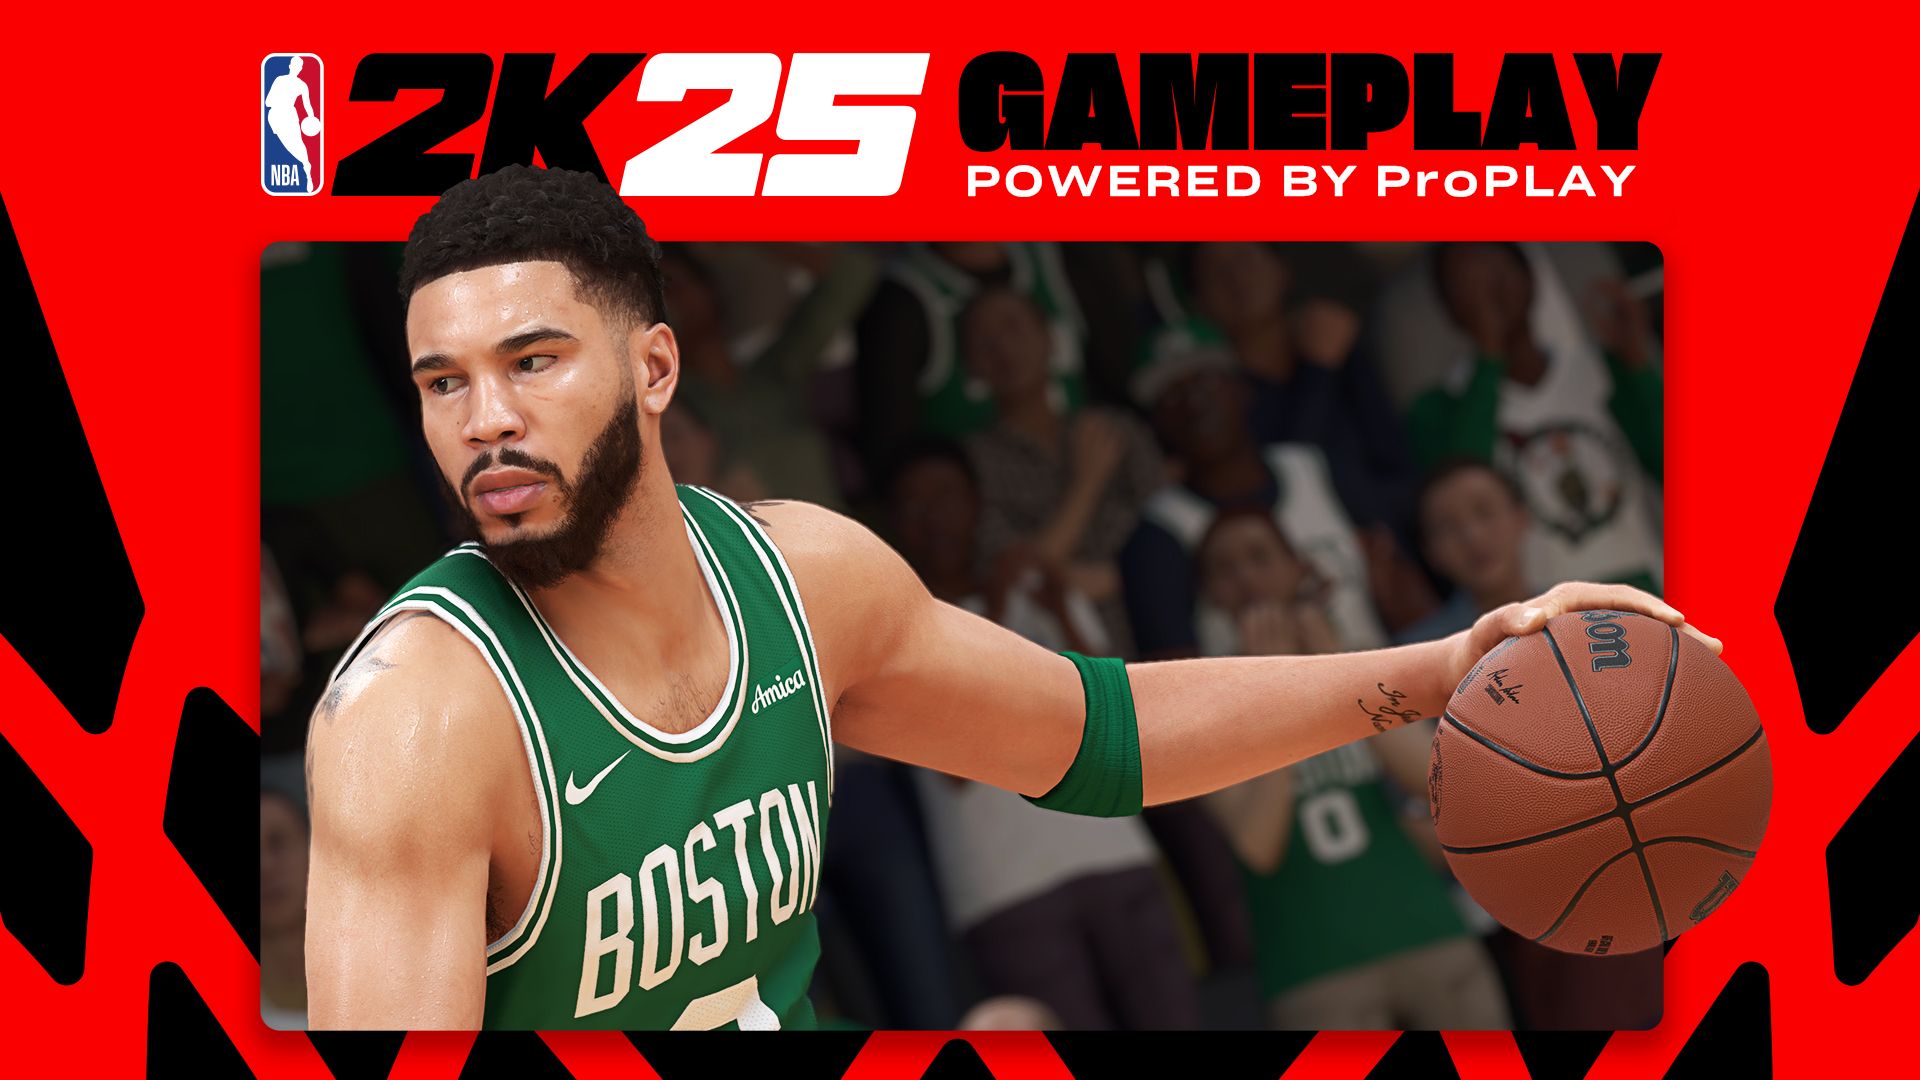 NBA 2K25 Gameplay - Um jogador do Celtics dribla a bola com o logotipo da 2K ao fundo